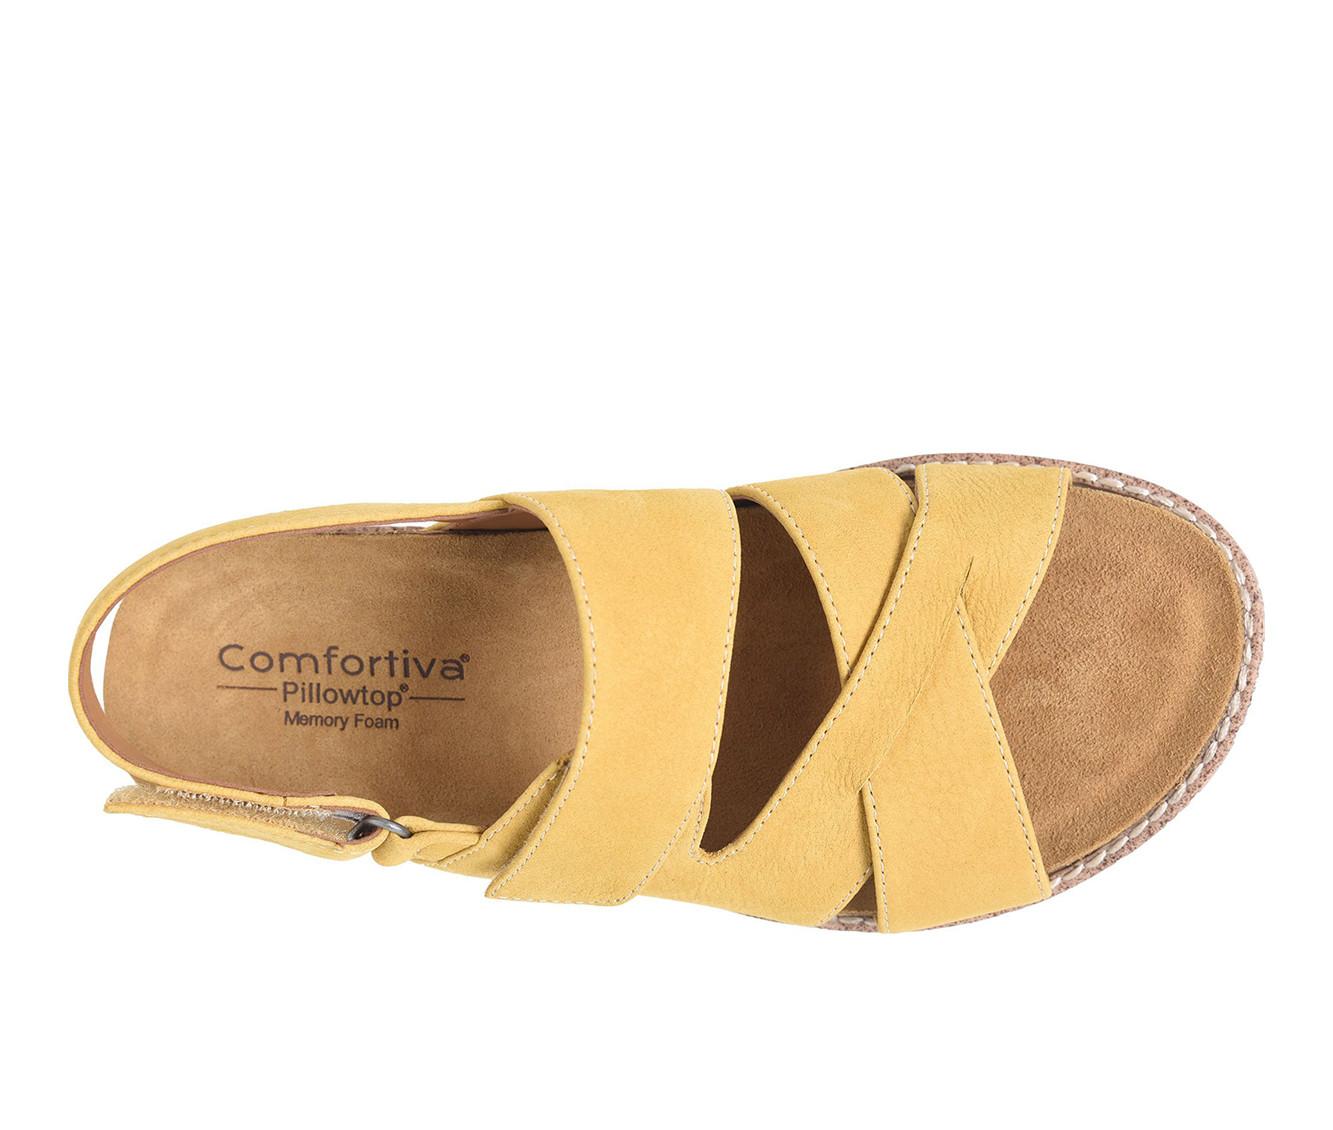 Women's Comfortiva Genata Sandals